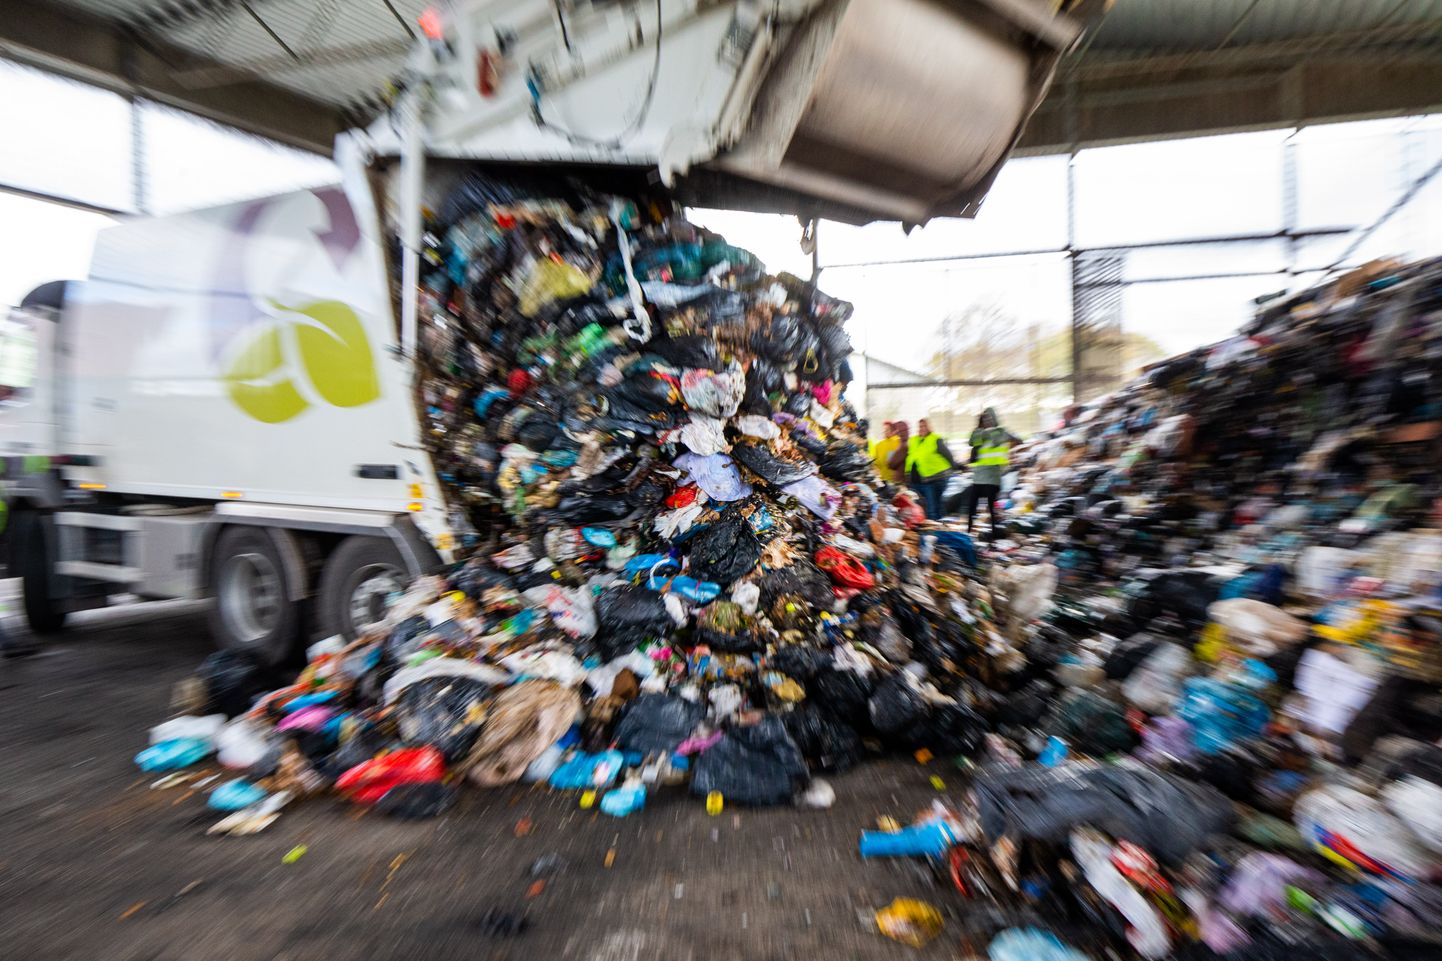 Lõppenud aastal ei suutnud Eesti täita Euroopa Liidu liikmesriikide kohustust suunata 50% segaolmejäätmetest ringlusesse.